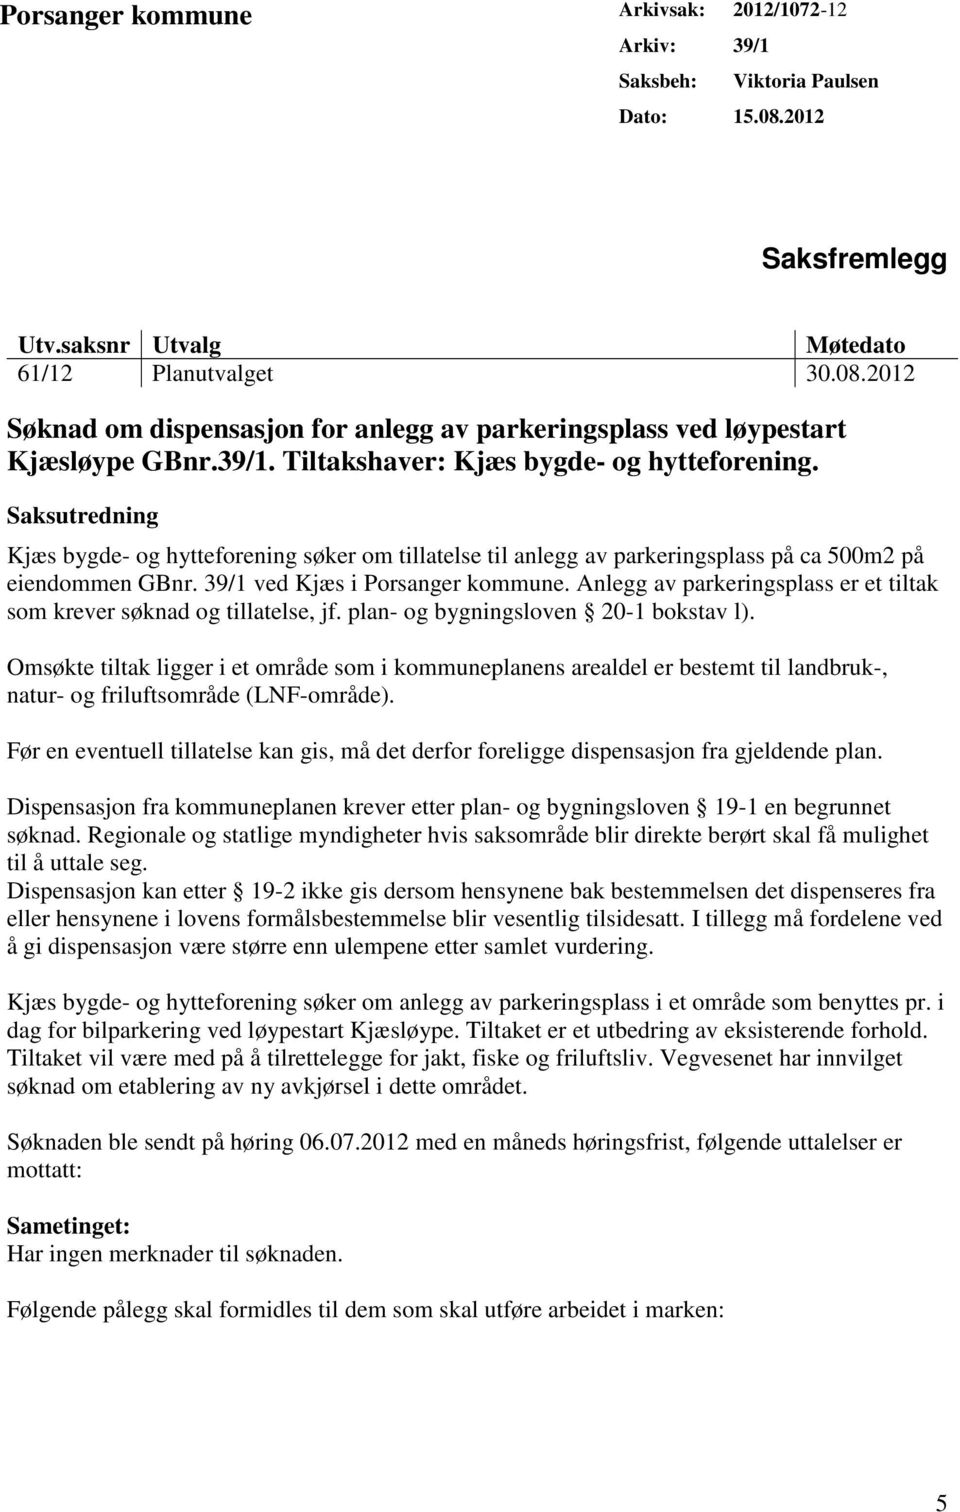 39/1 ved Kjæs i Porsanger kommune. Anlegg av parkeringsplass er et tiltak som krever søknad og tillatelse, jf. plan- og bygningsloven 20-1 bokstav l).